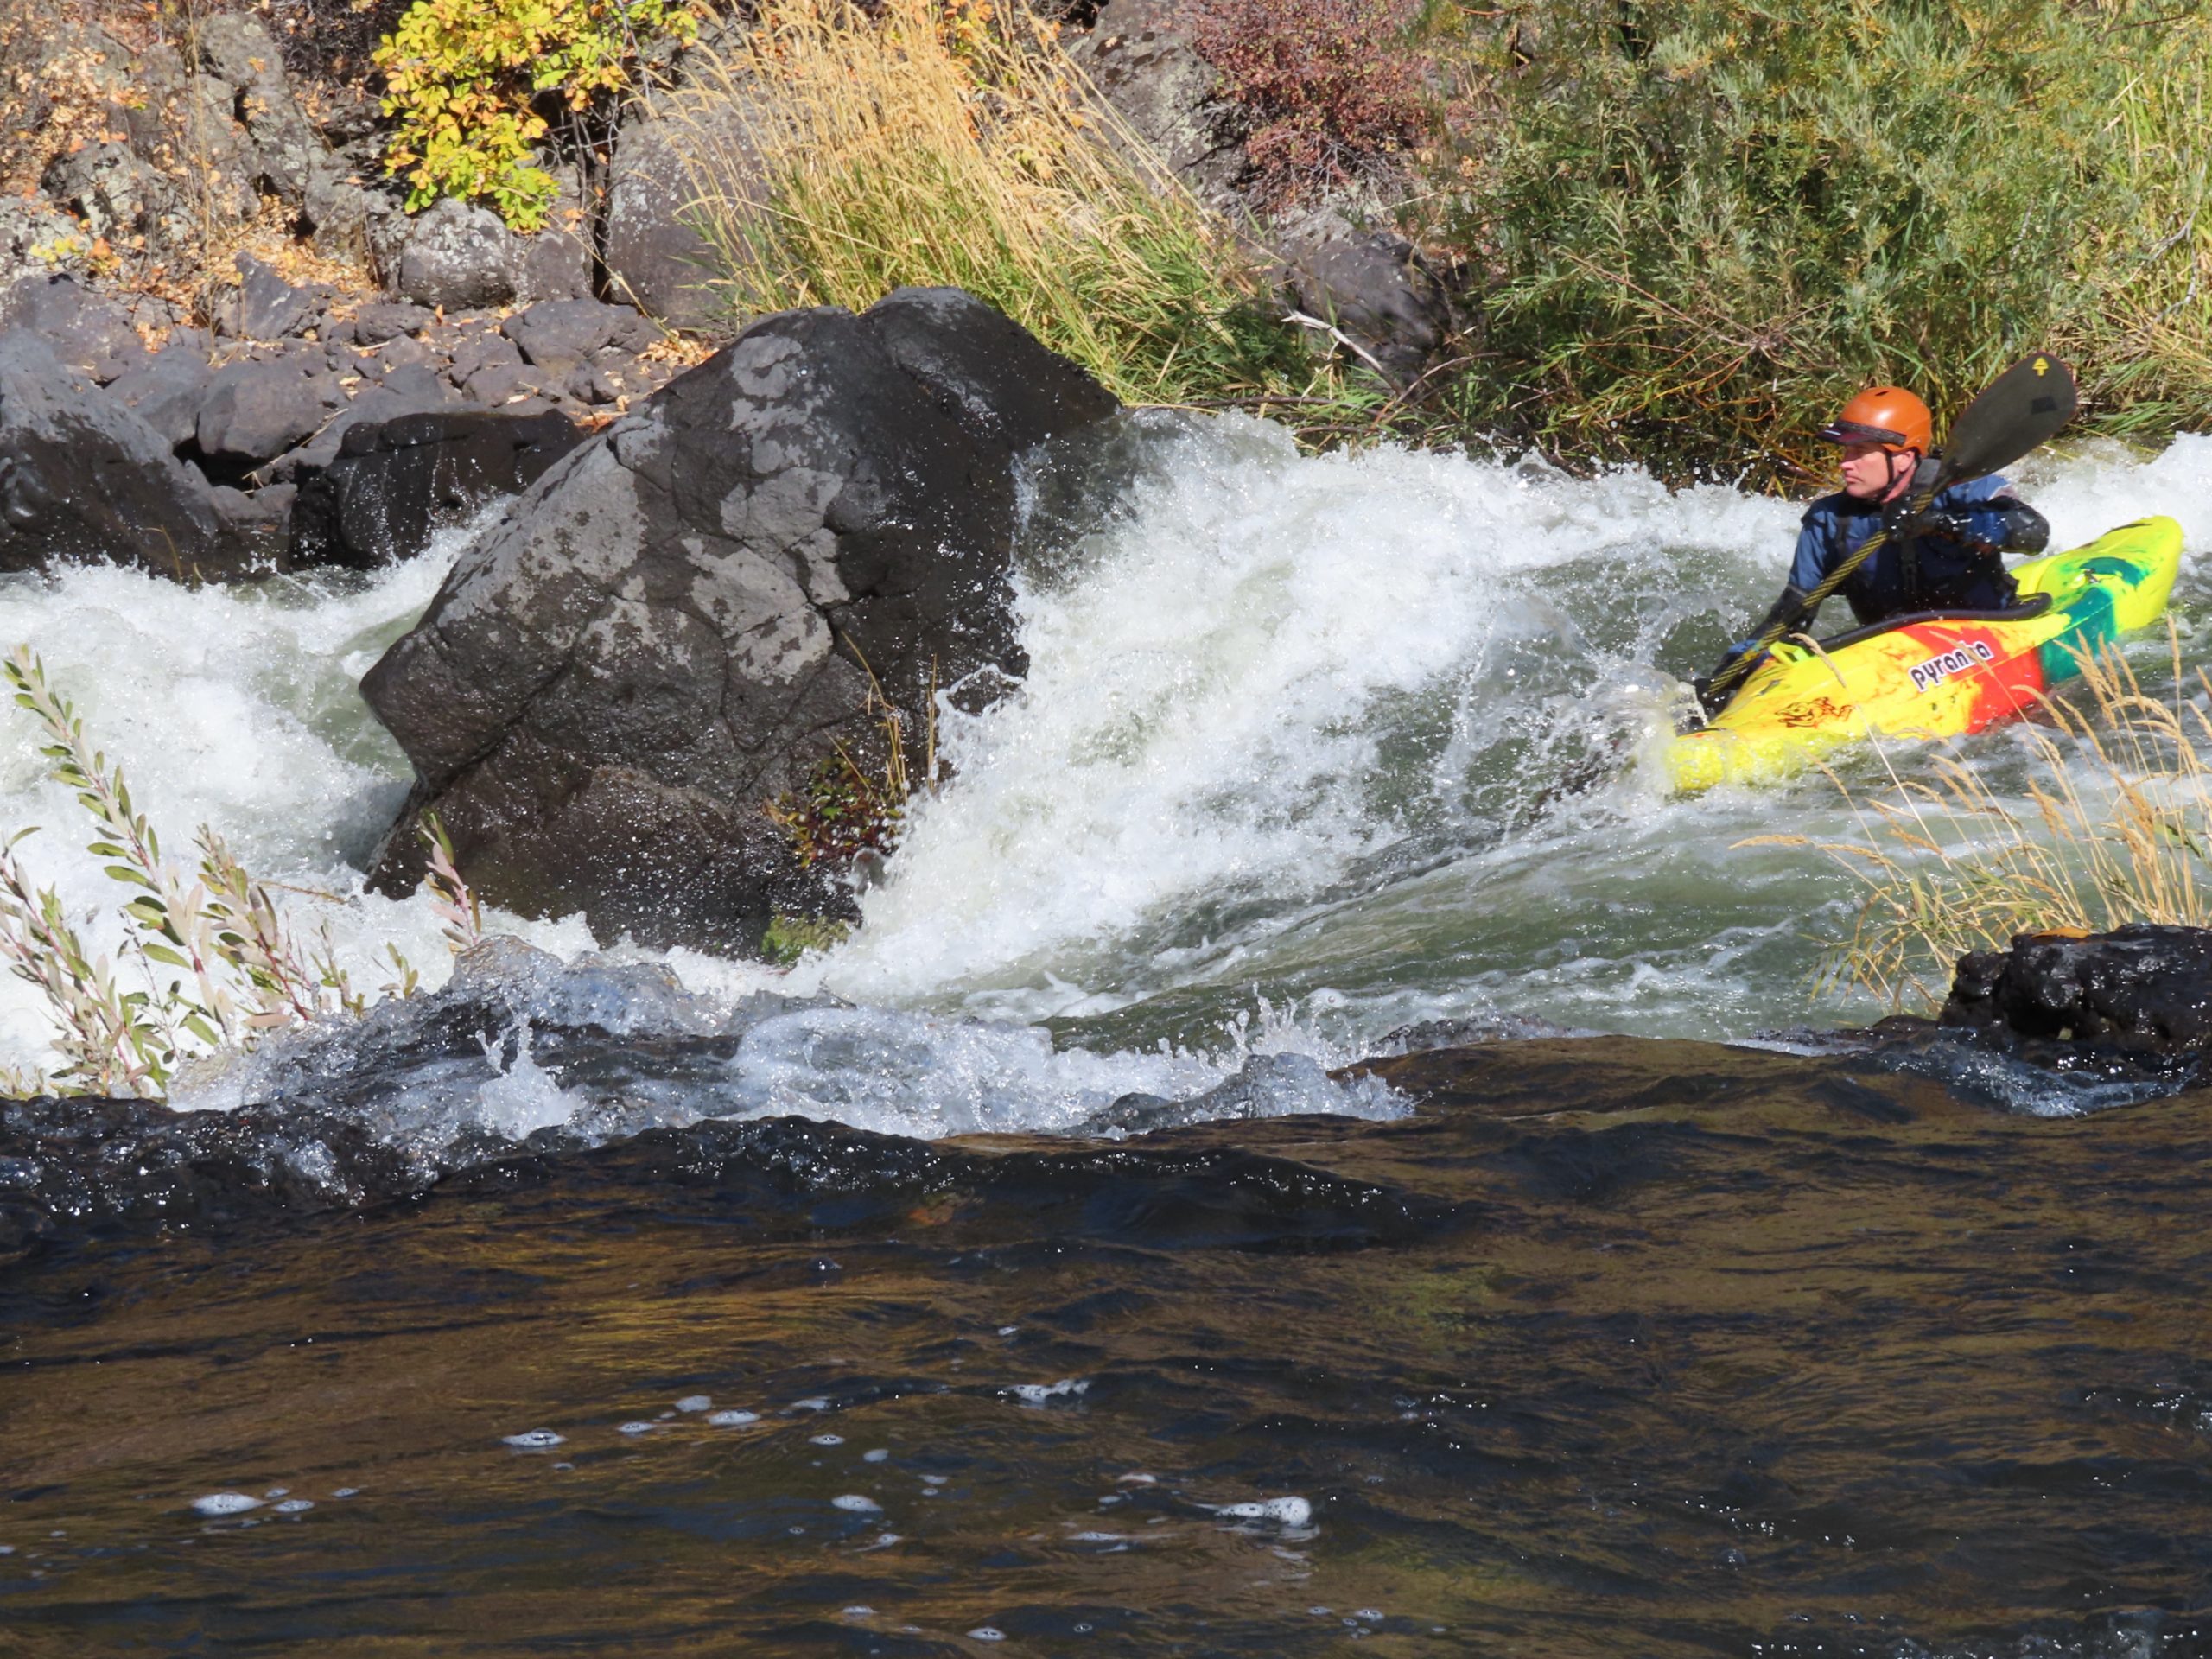 Kayaker going through rapid